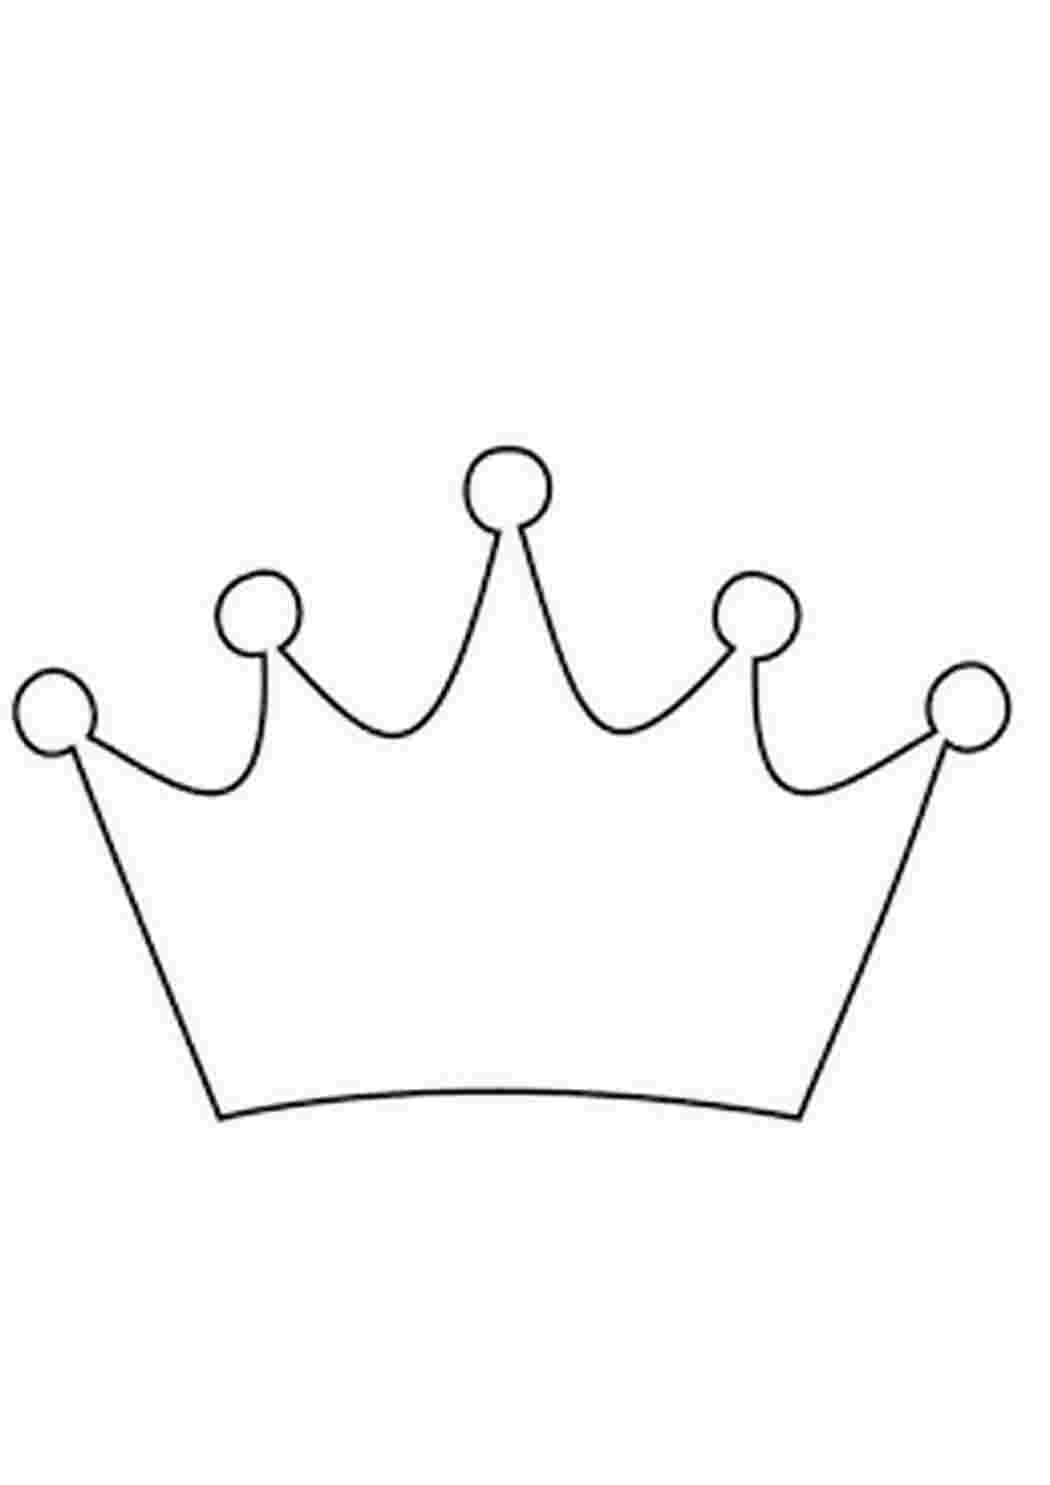 Топ 20 раскрасок Crown для детей